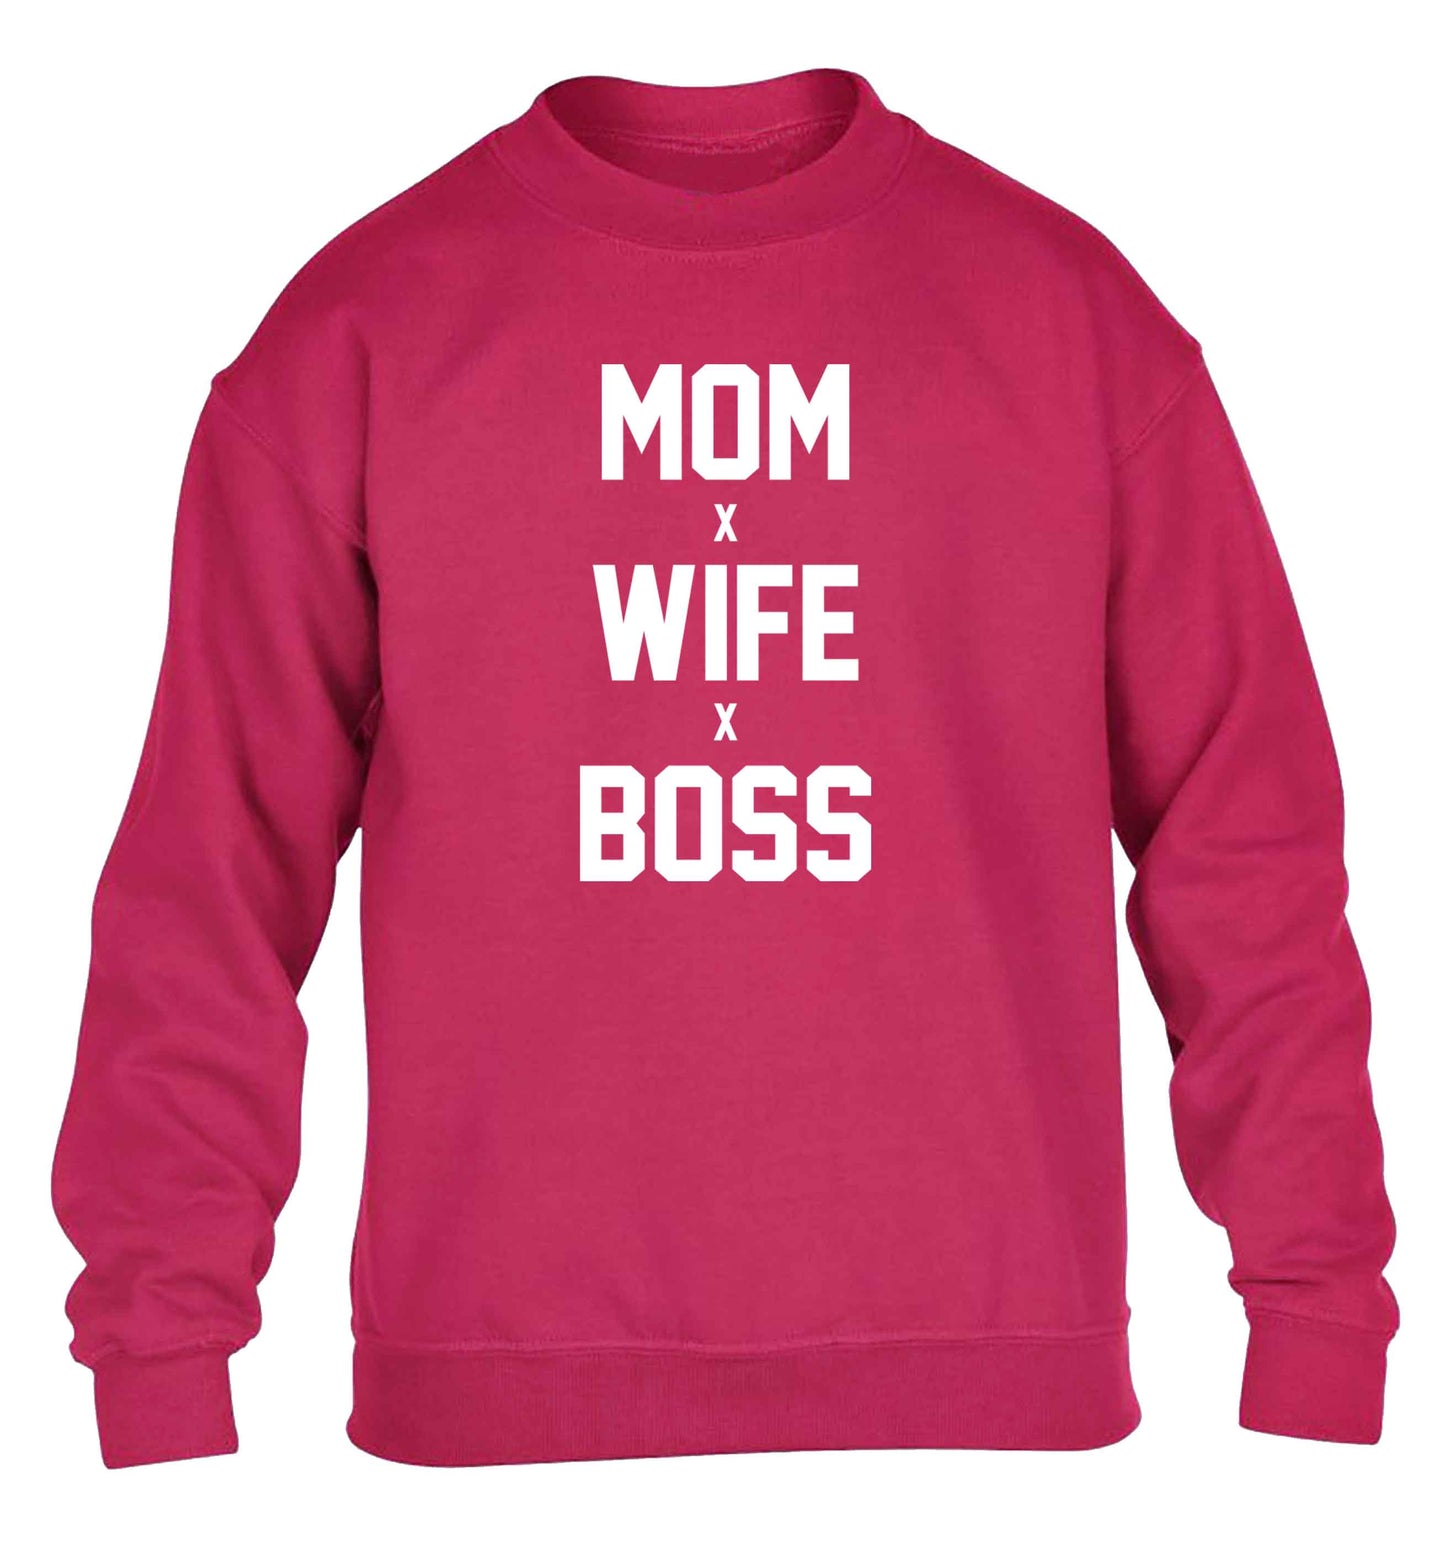 Mum wife boss children's pink sweater 12-13 Years